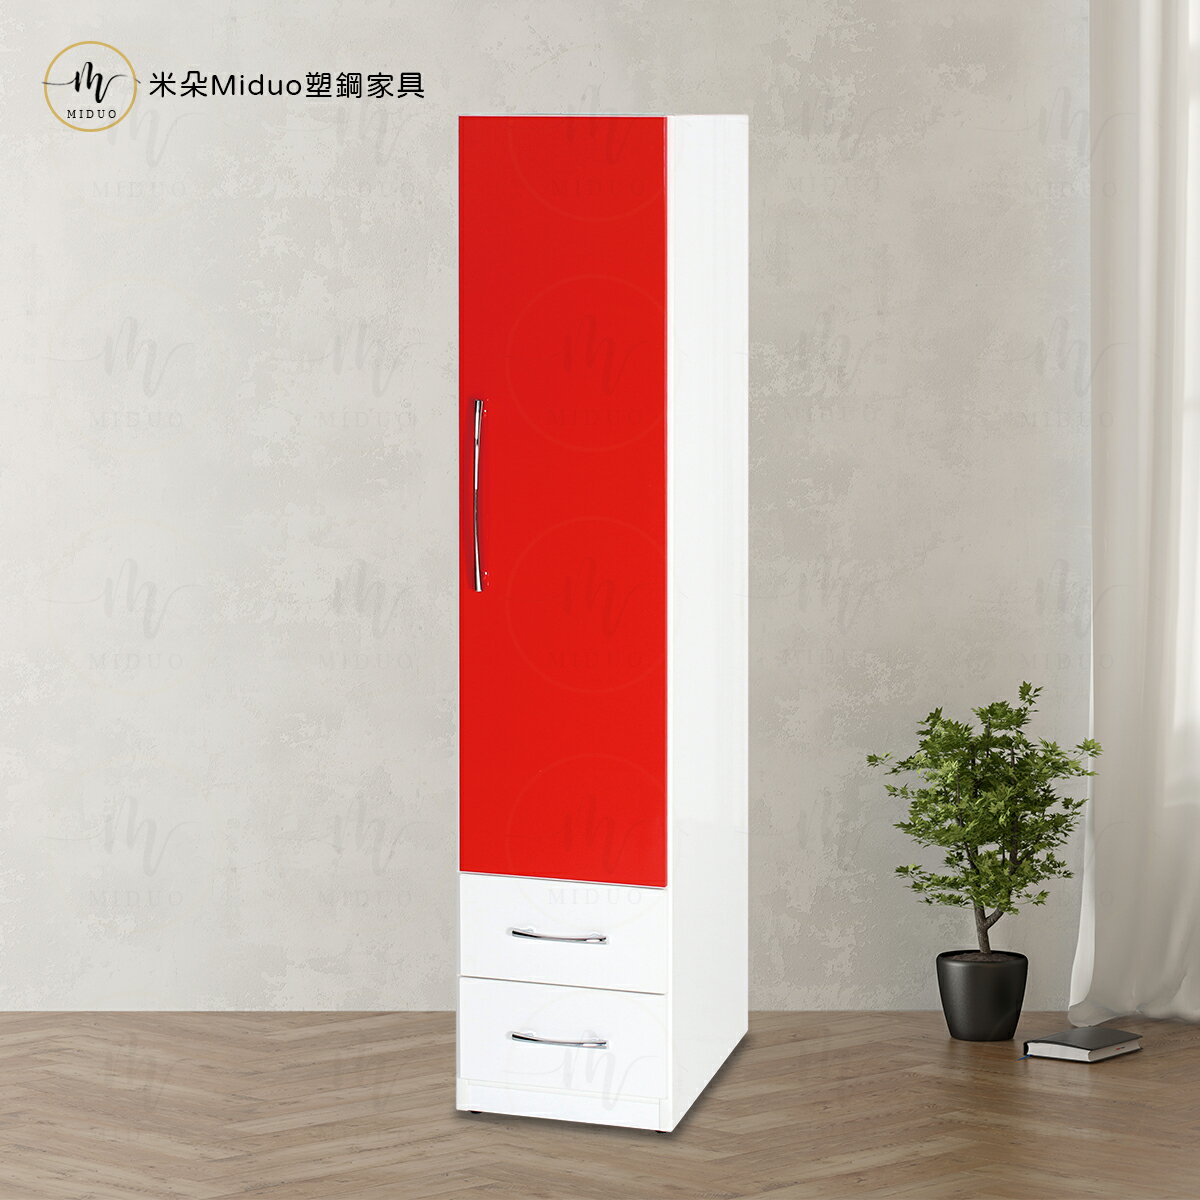 1.4尺單門兩抽塑鋼衣櫃 衣櫥 防水塑鋼家具【米朵Miduo】